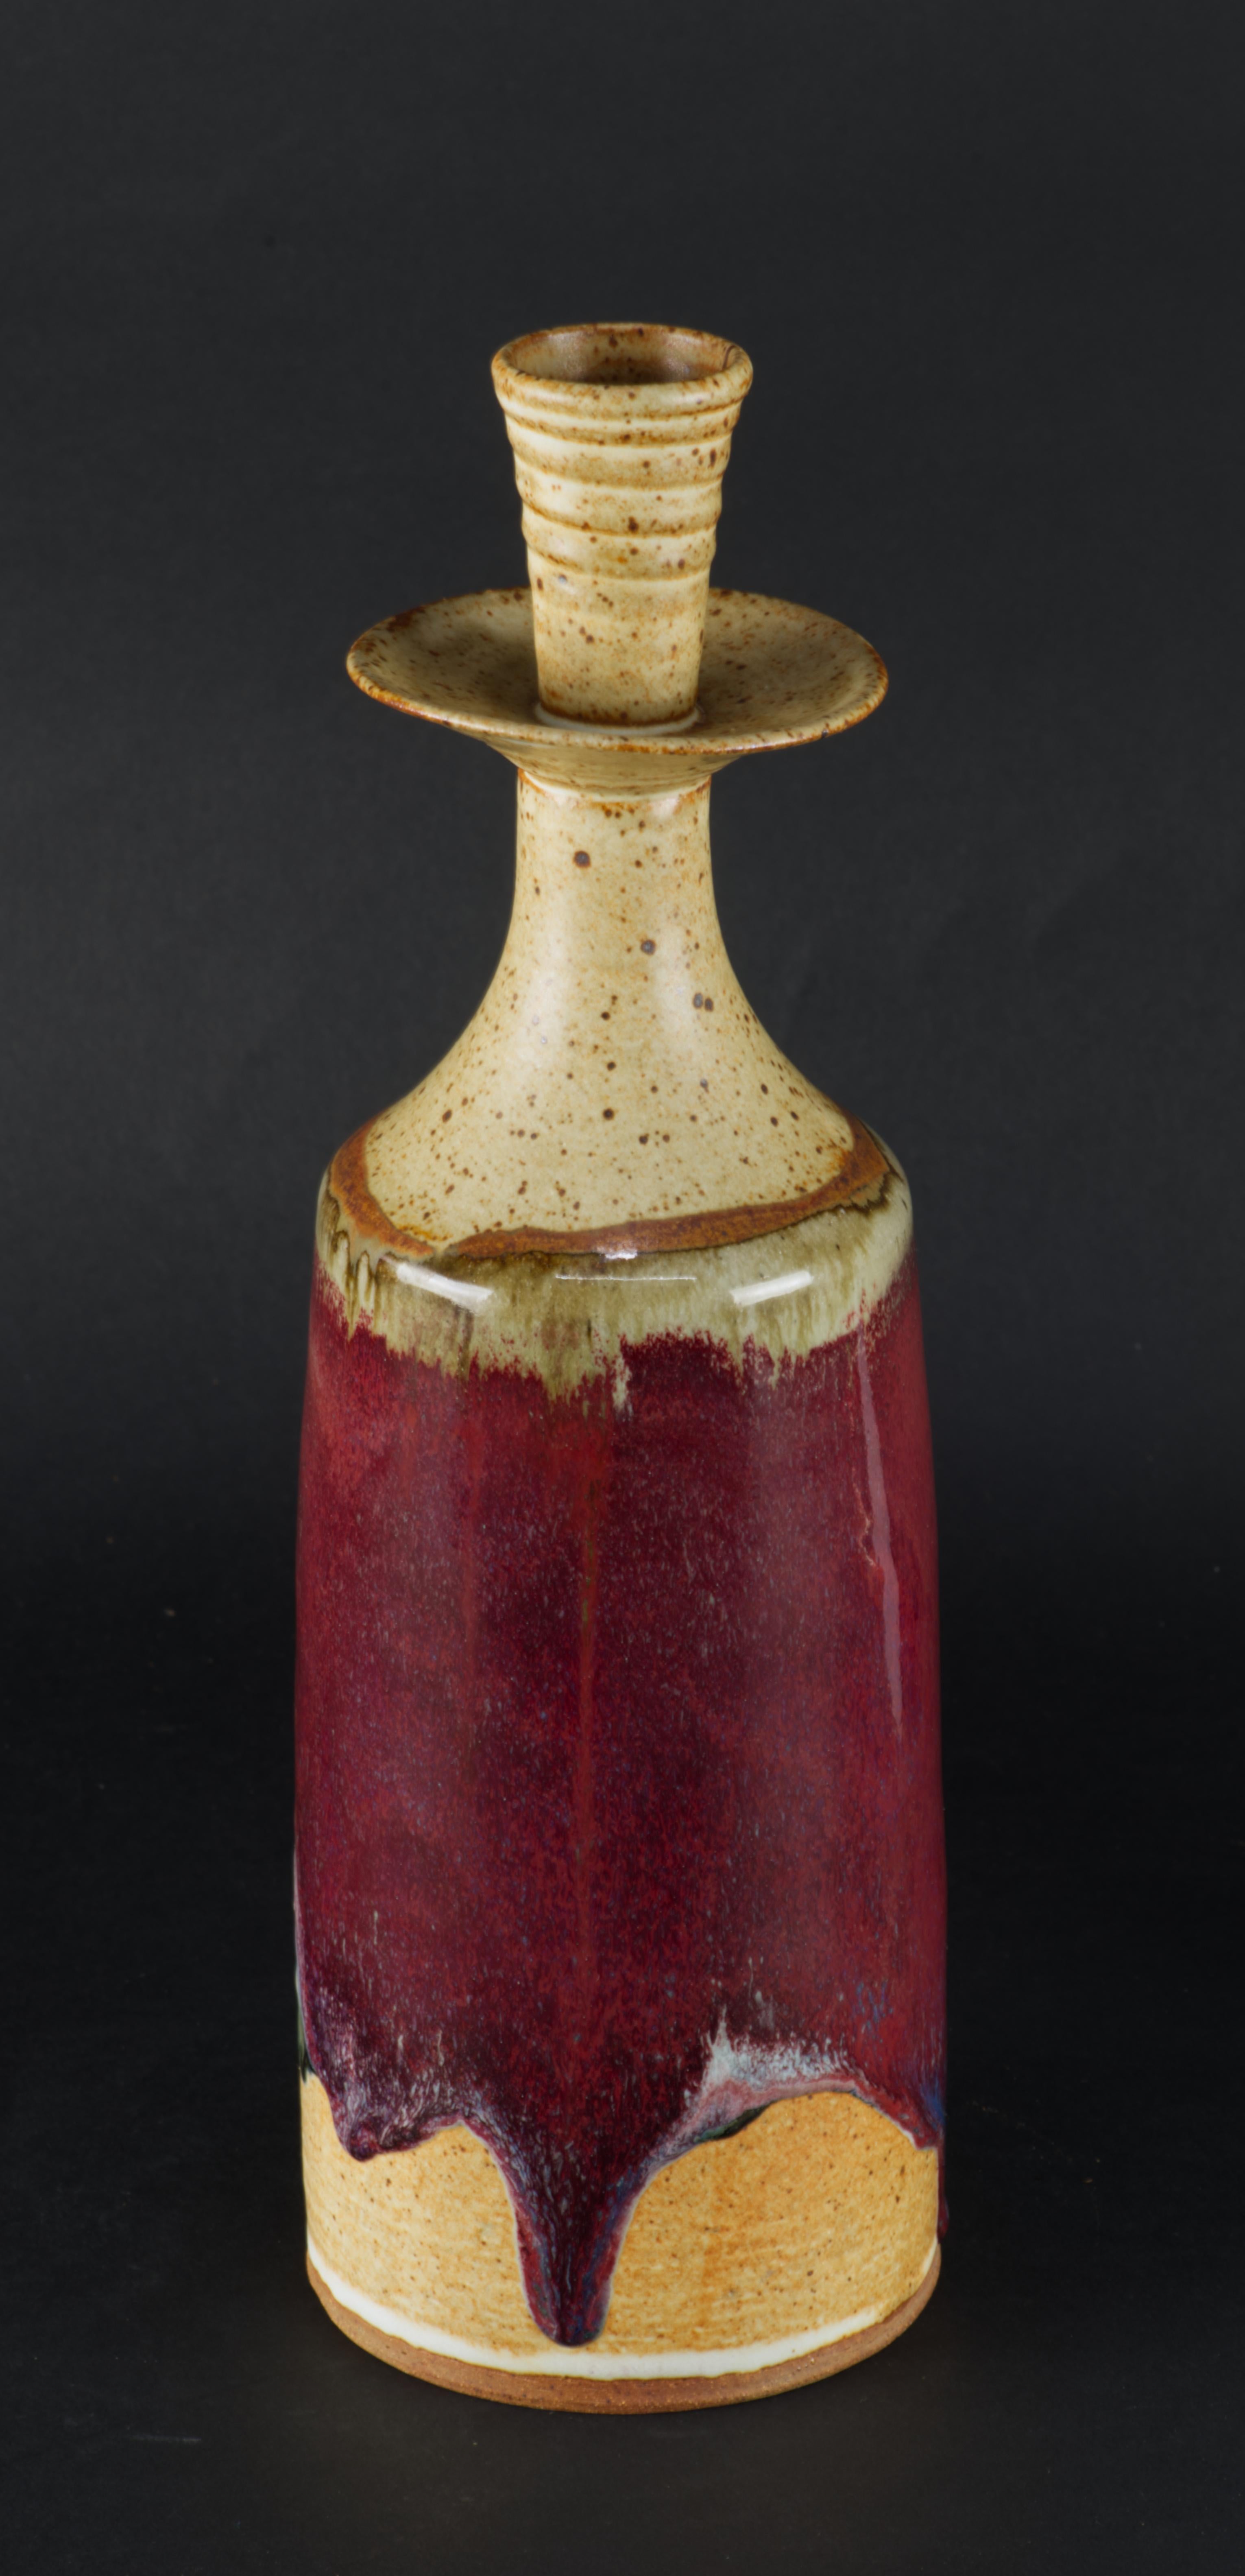  Der handgefertigte Keramik-Kerzenhalter hat eine schöne moderne Form und ist mit einer Kombination aus verschiedenen Glasuren verziert. Der Hals und der Korpus sind mit einer halbmatten, traditionellen braunen Salzglasur versehen. An der Schulter